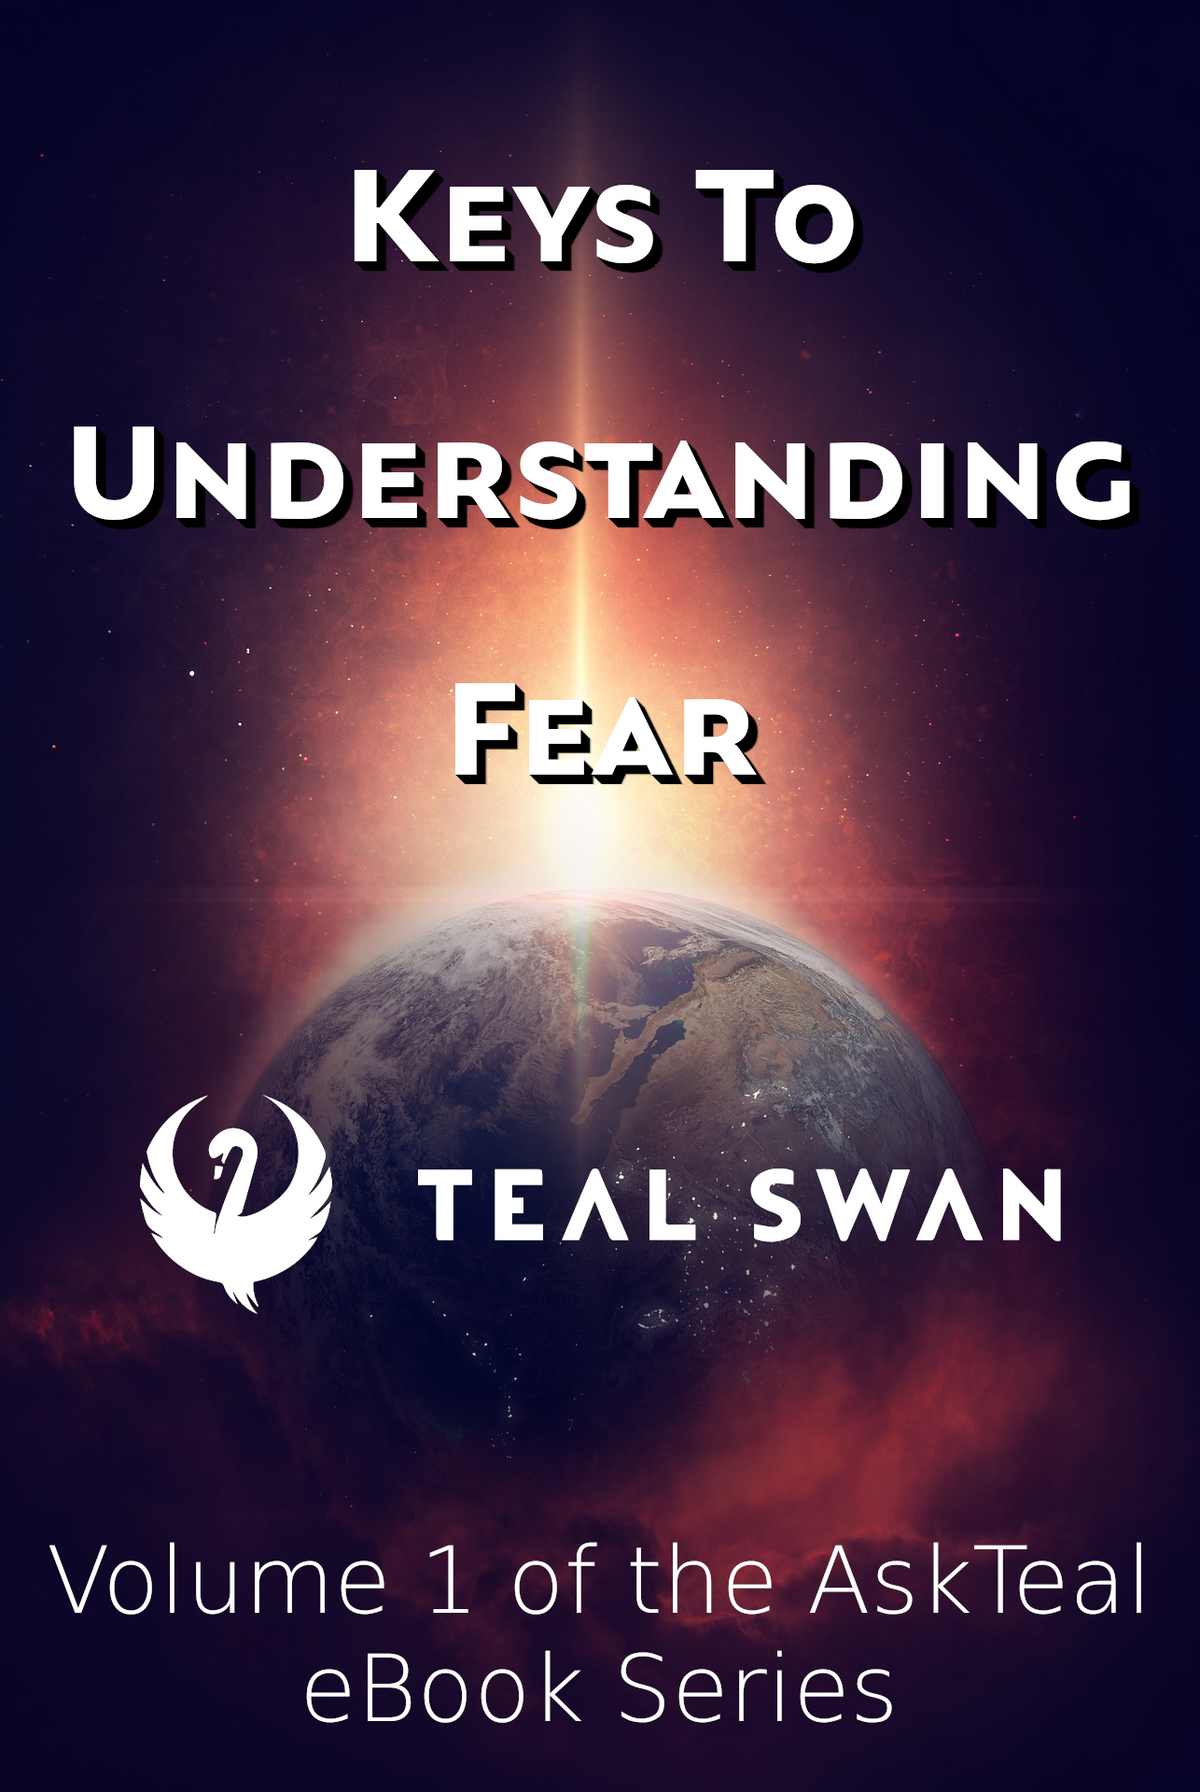 Keys To Understanding Fear - AskTeal eBook Series